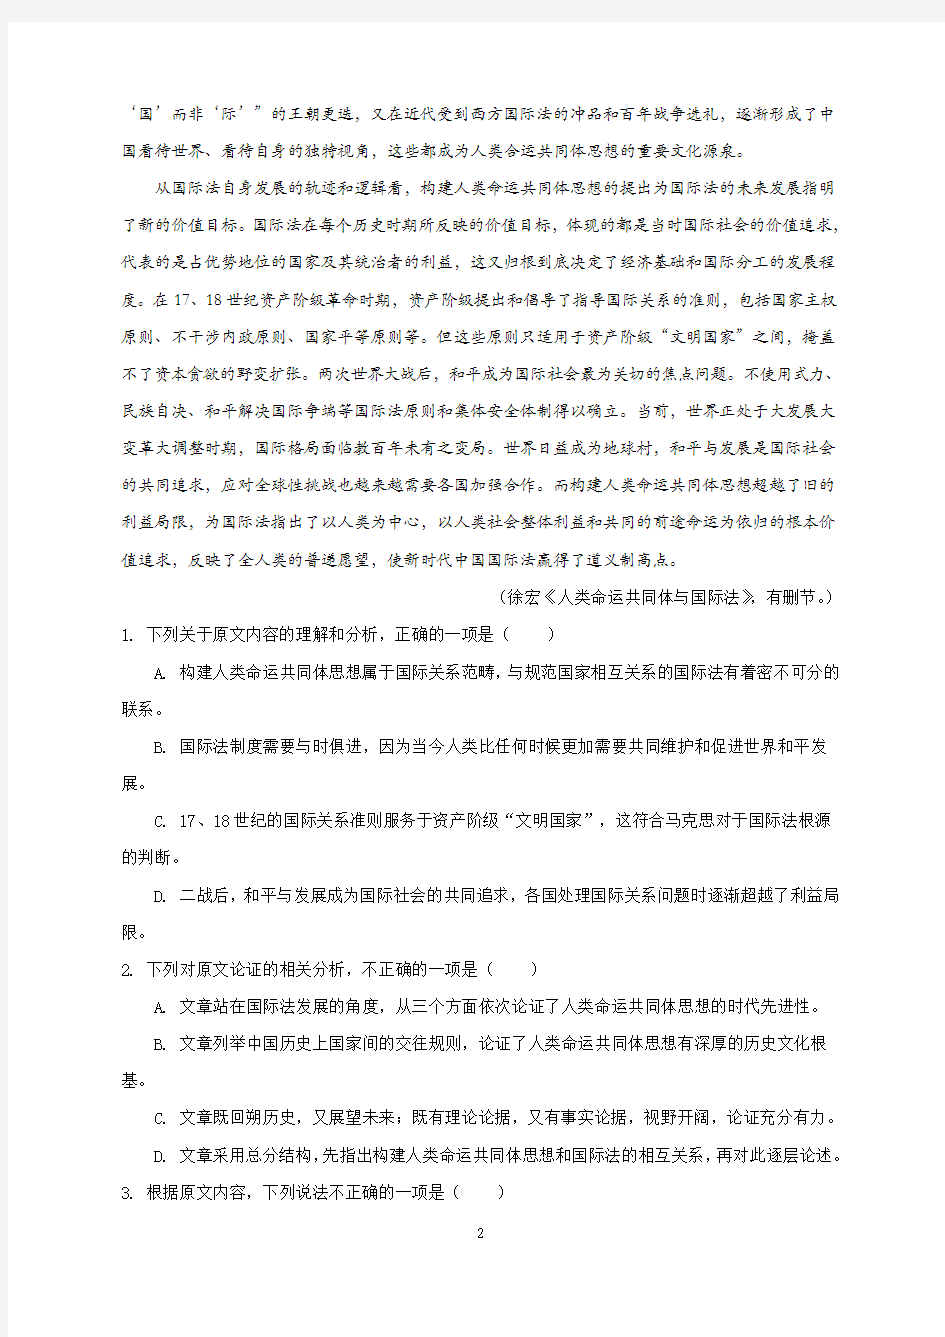 2020年河北省高考语文模拟试题与答案(二)